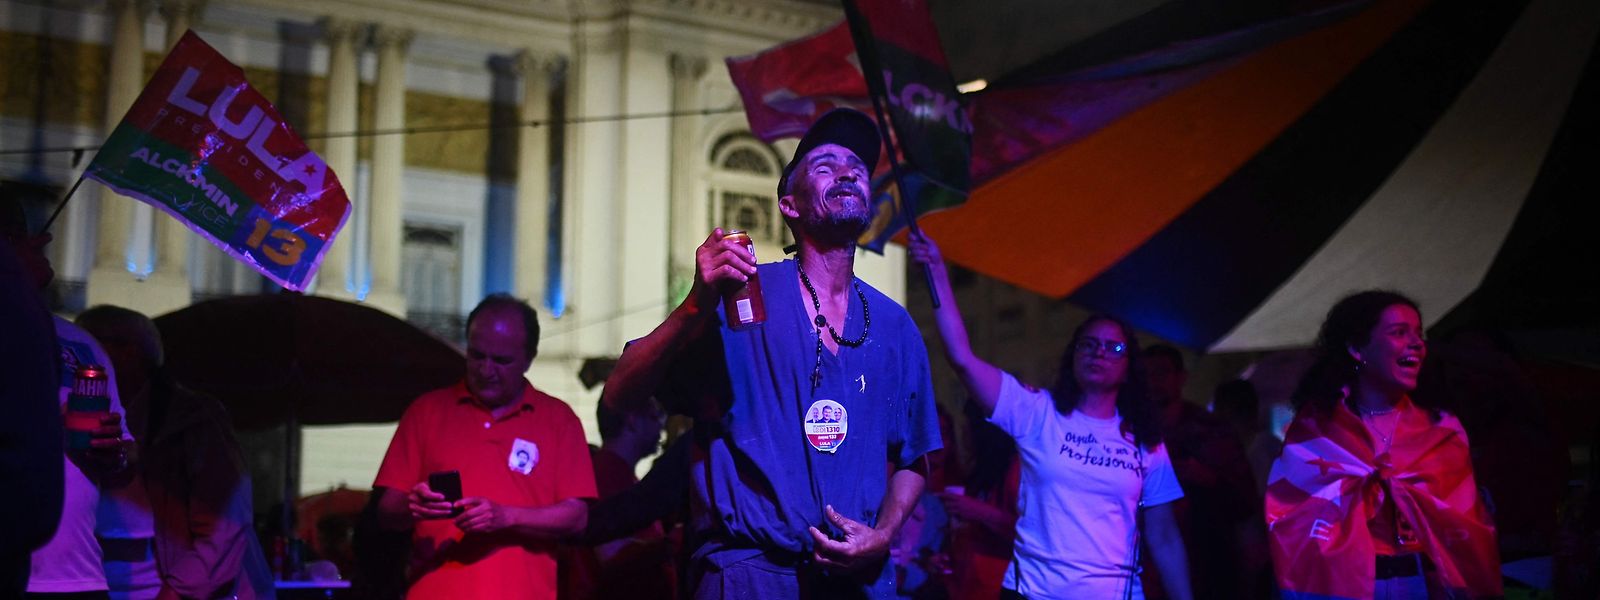 Anhänger von Lula feiern dessen Sieg in der ersten Wahlrunde. Doch das Ergebnis fiel deutlich knapper aus als erwartet.